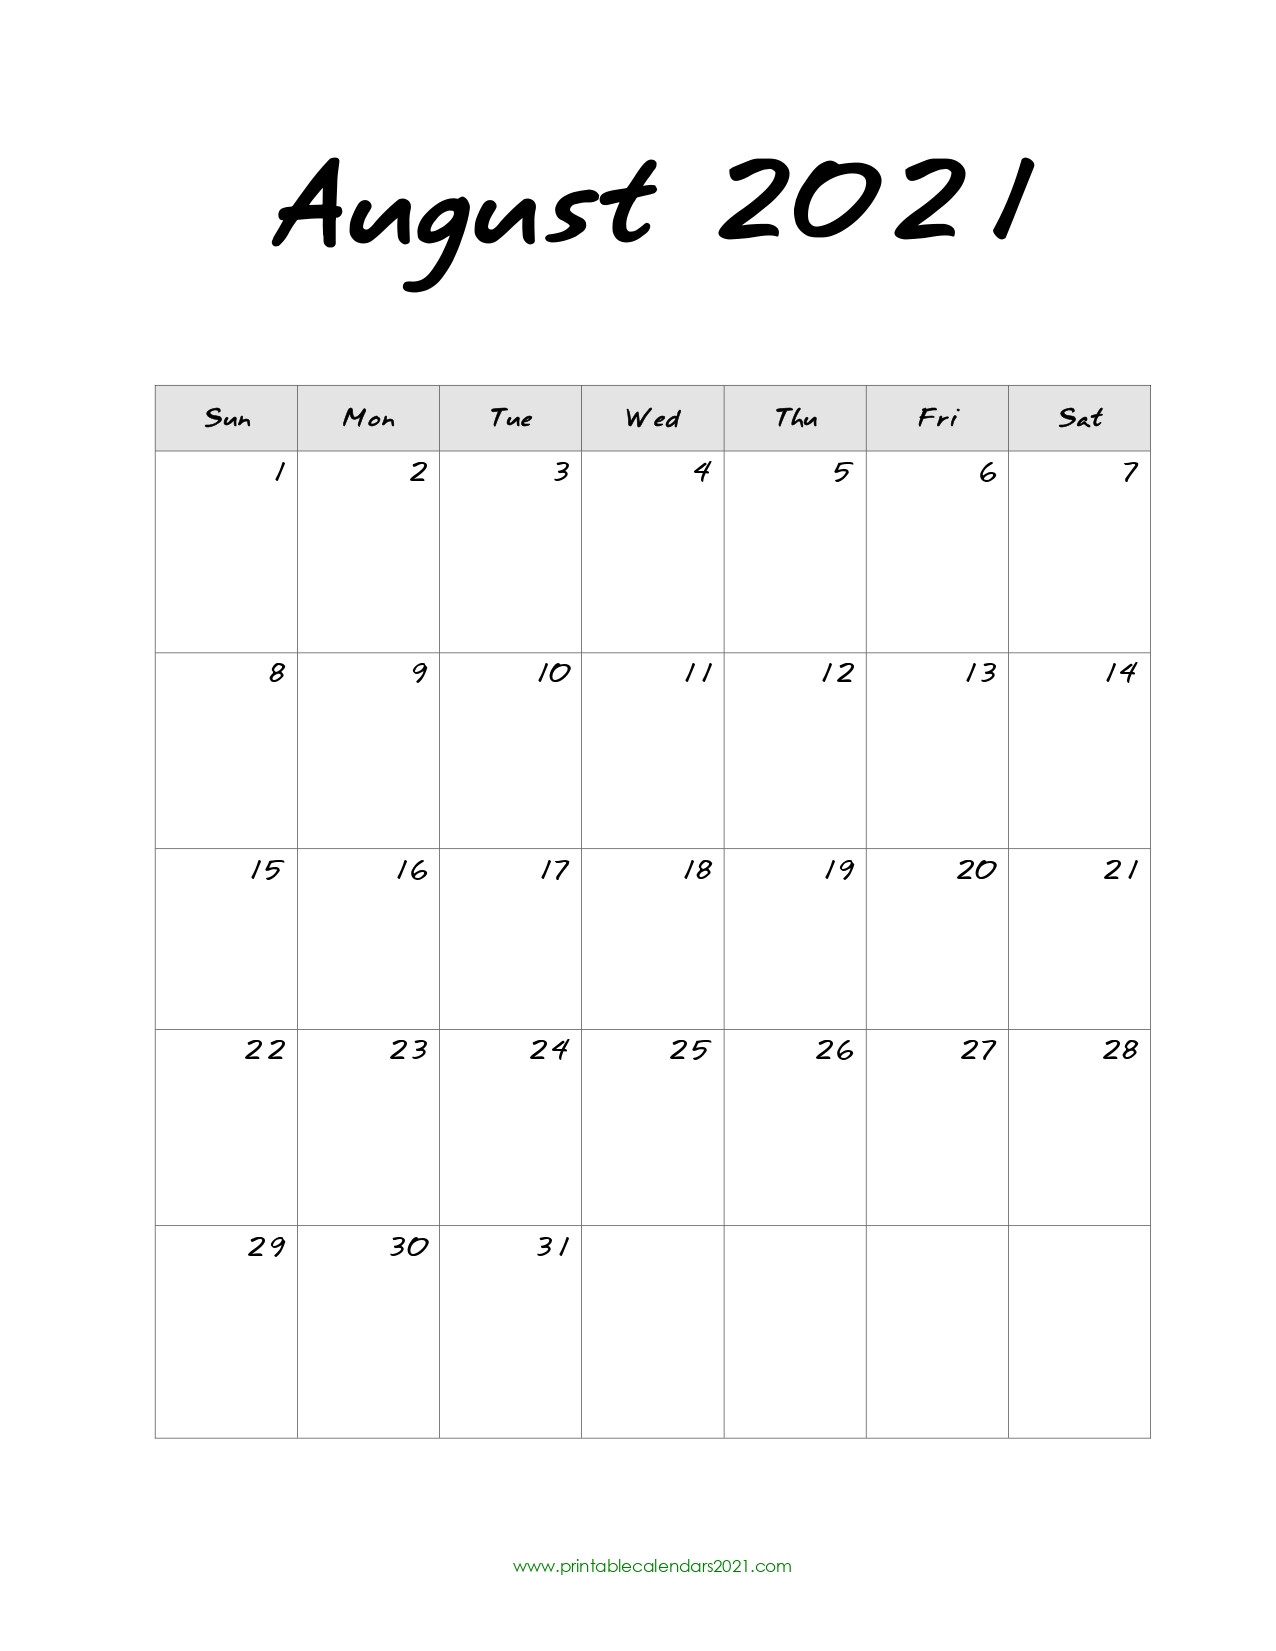 44+ August 2021 Calendar Printable, August 2021 Blank Calendar Pdf-Hourly Aug 2021 Calendar